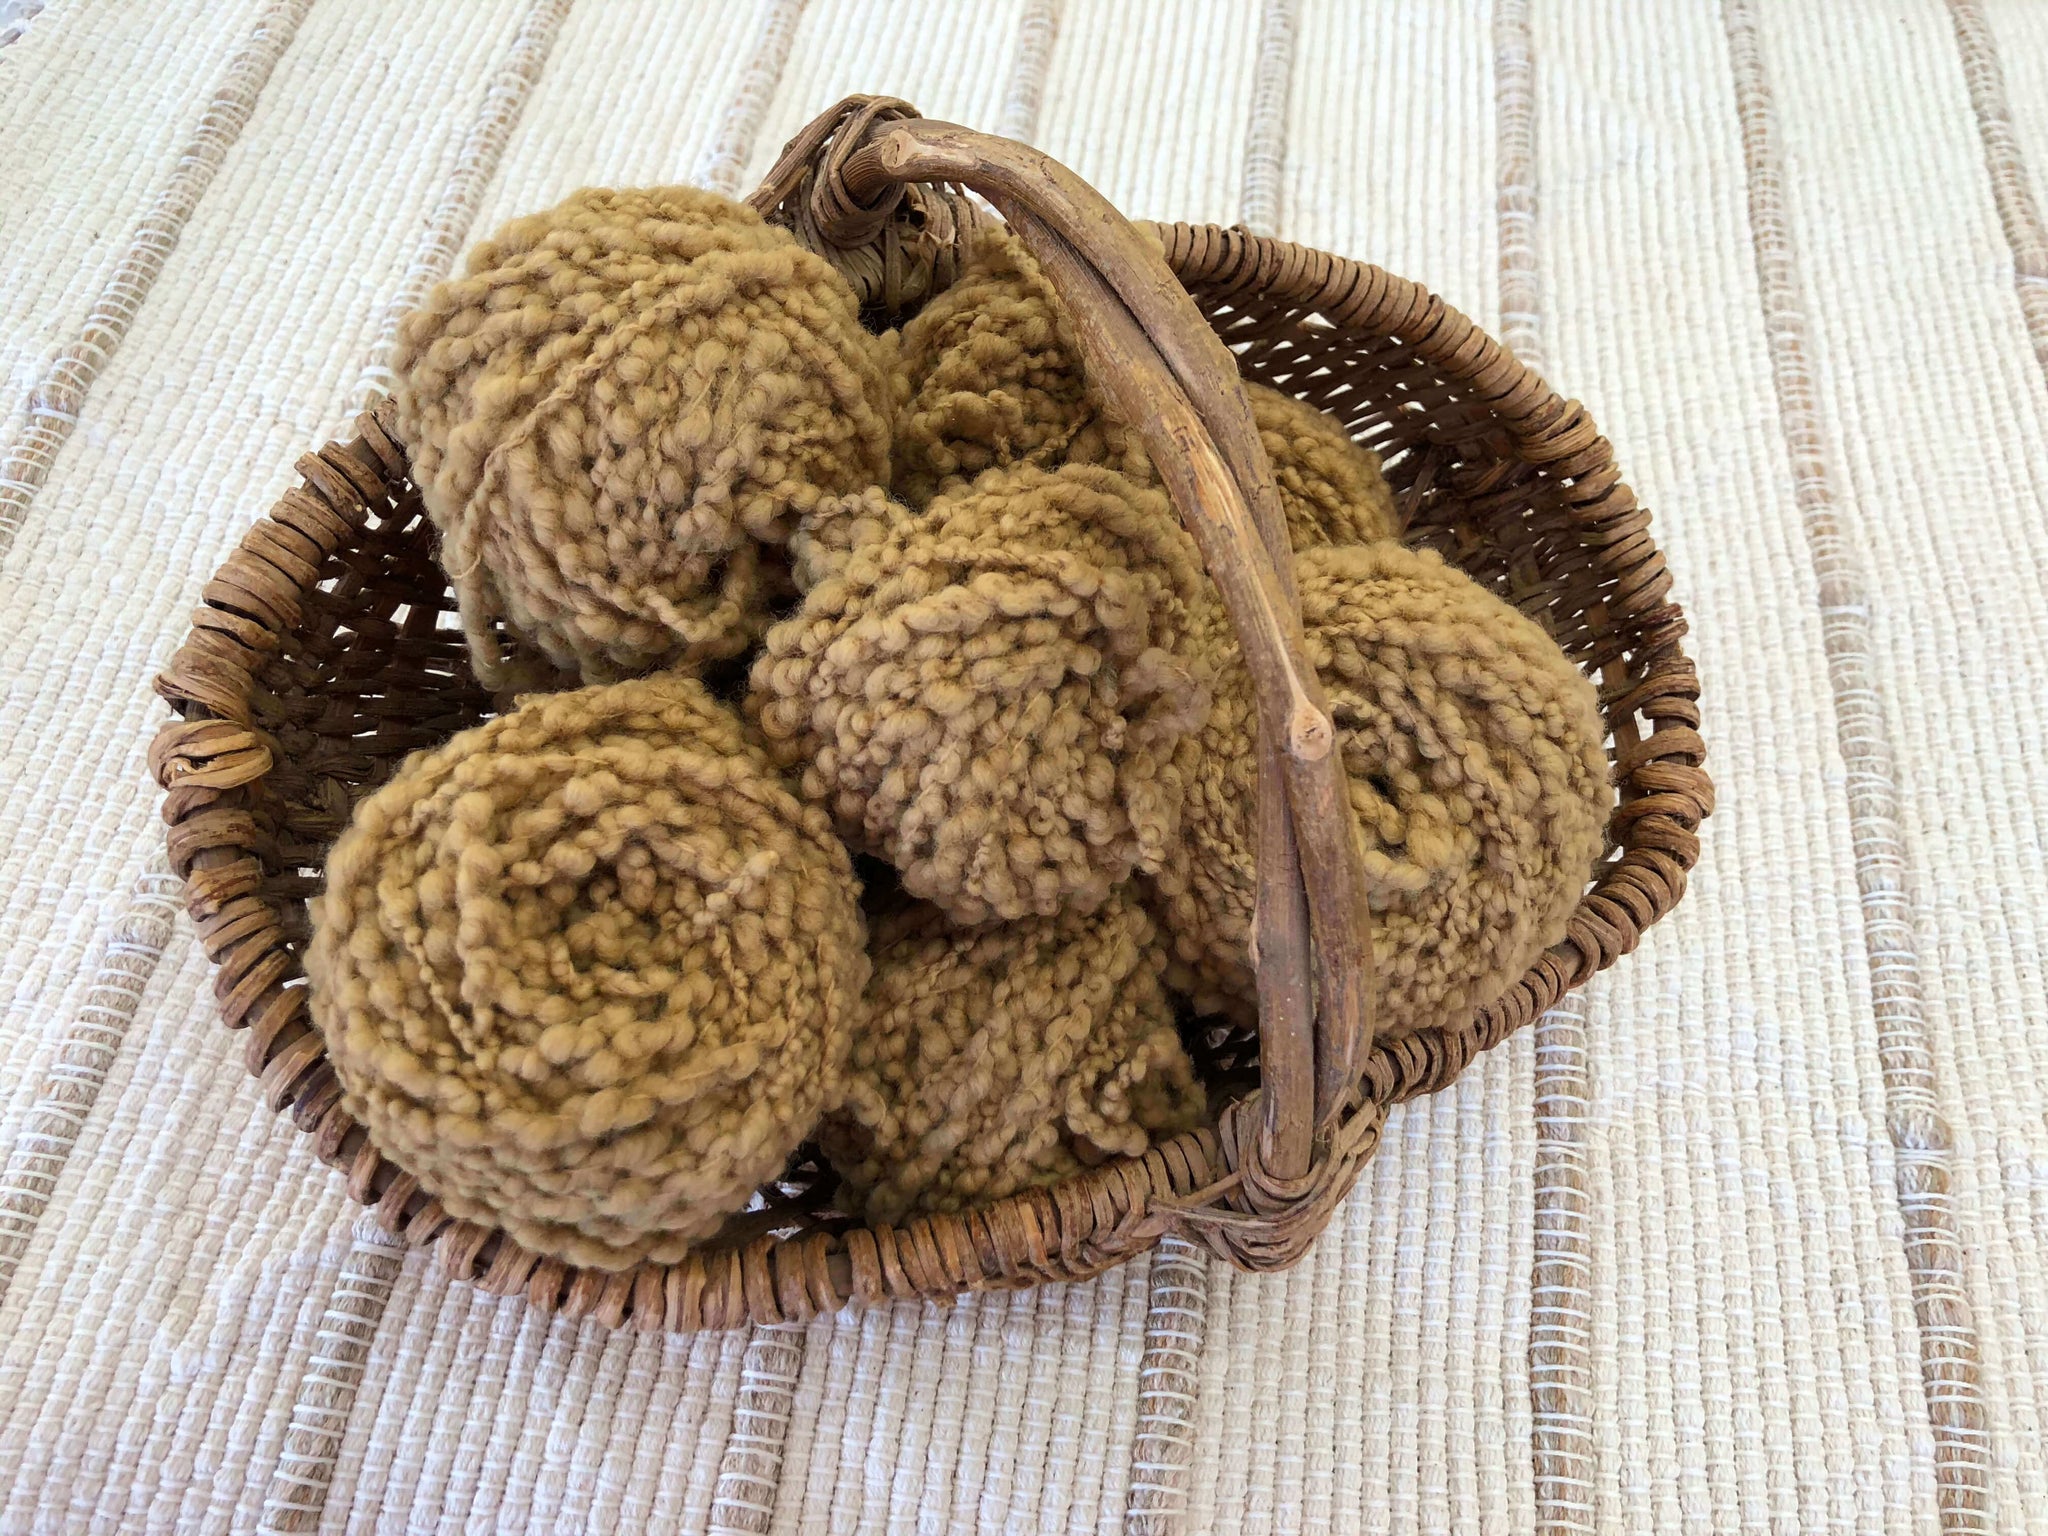 tea dyed yarn in basket